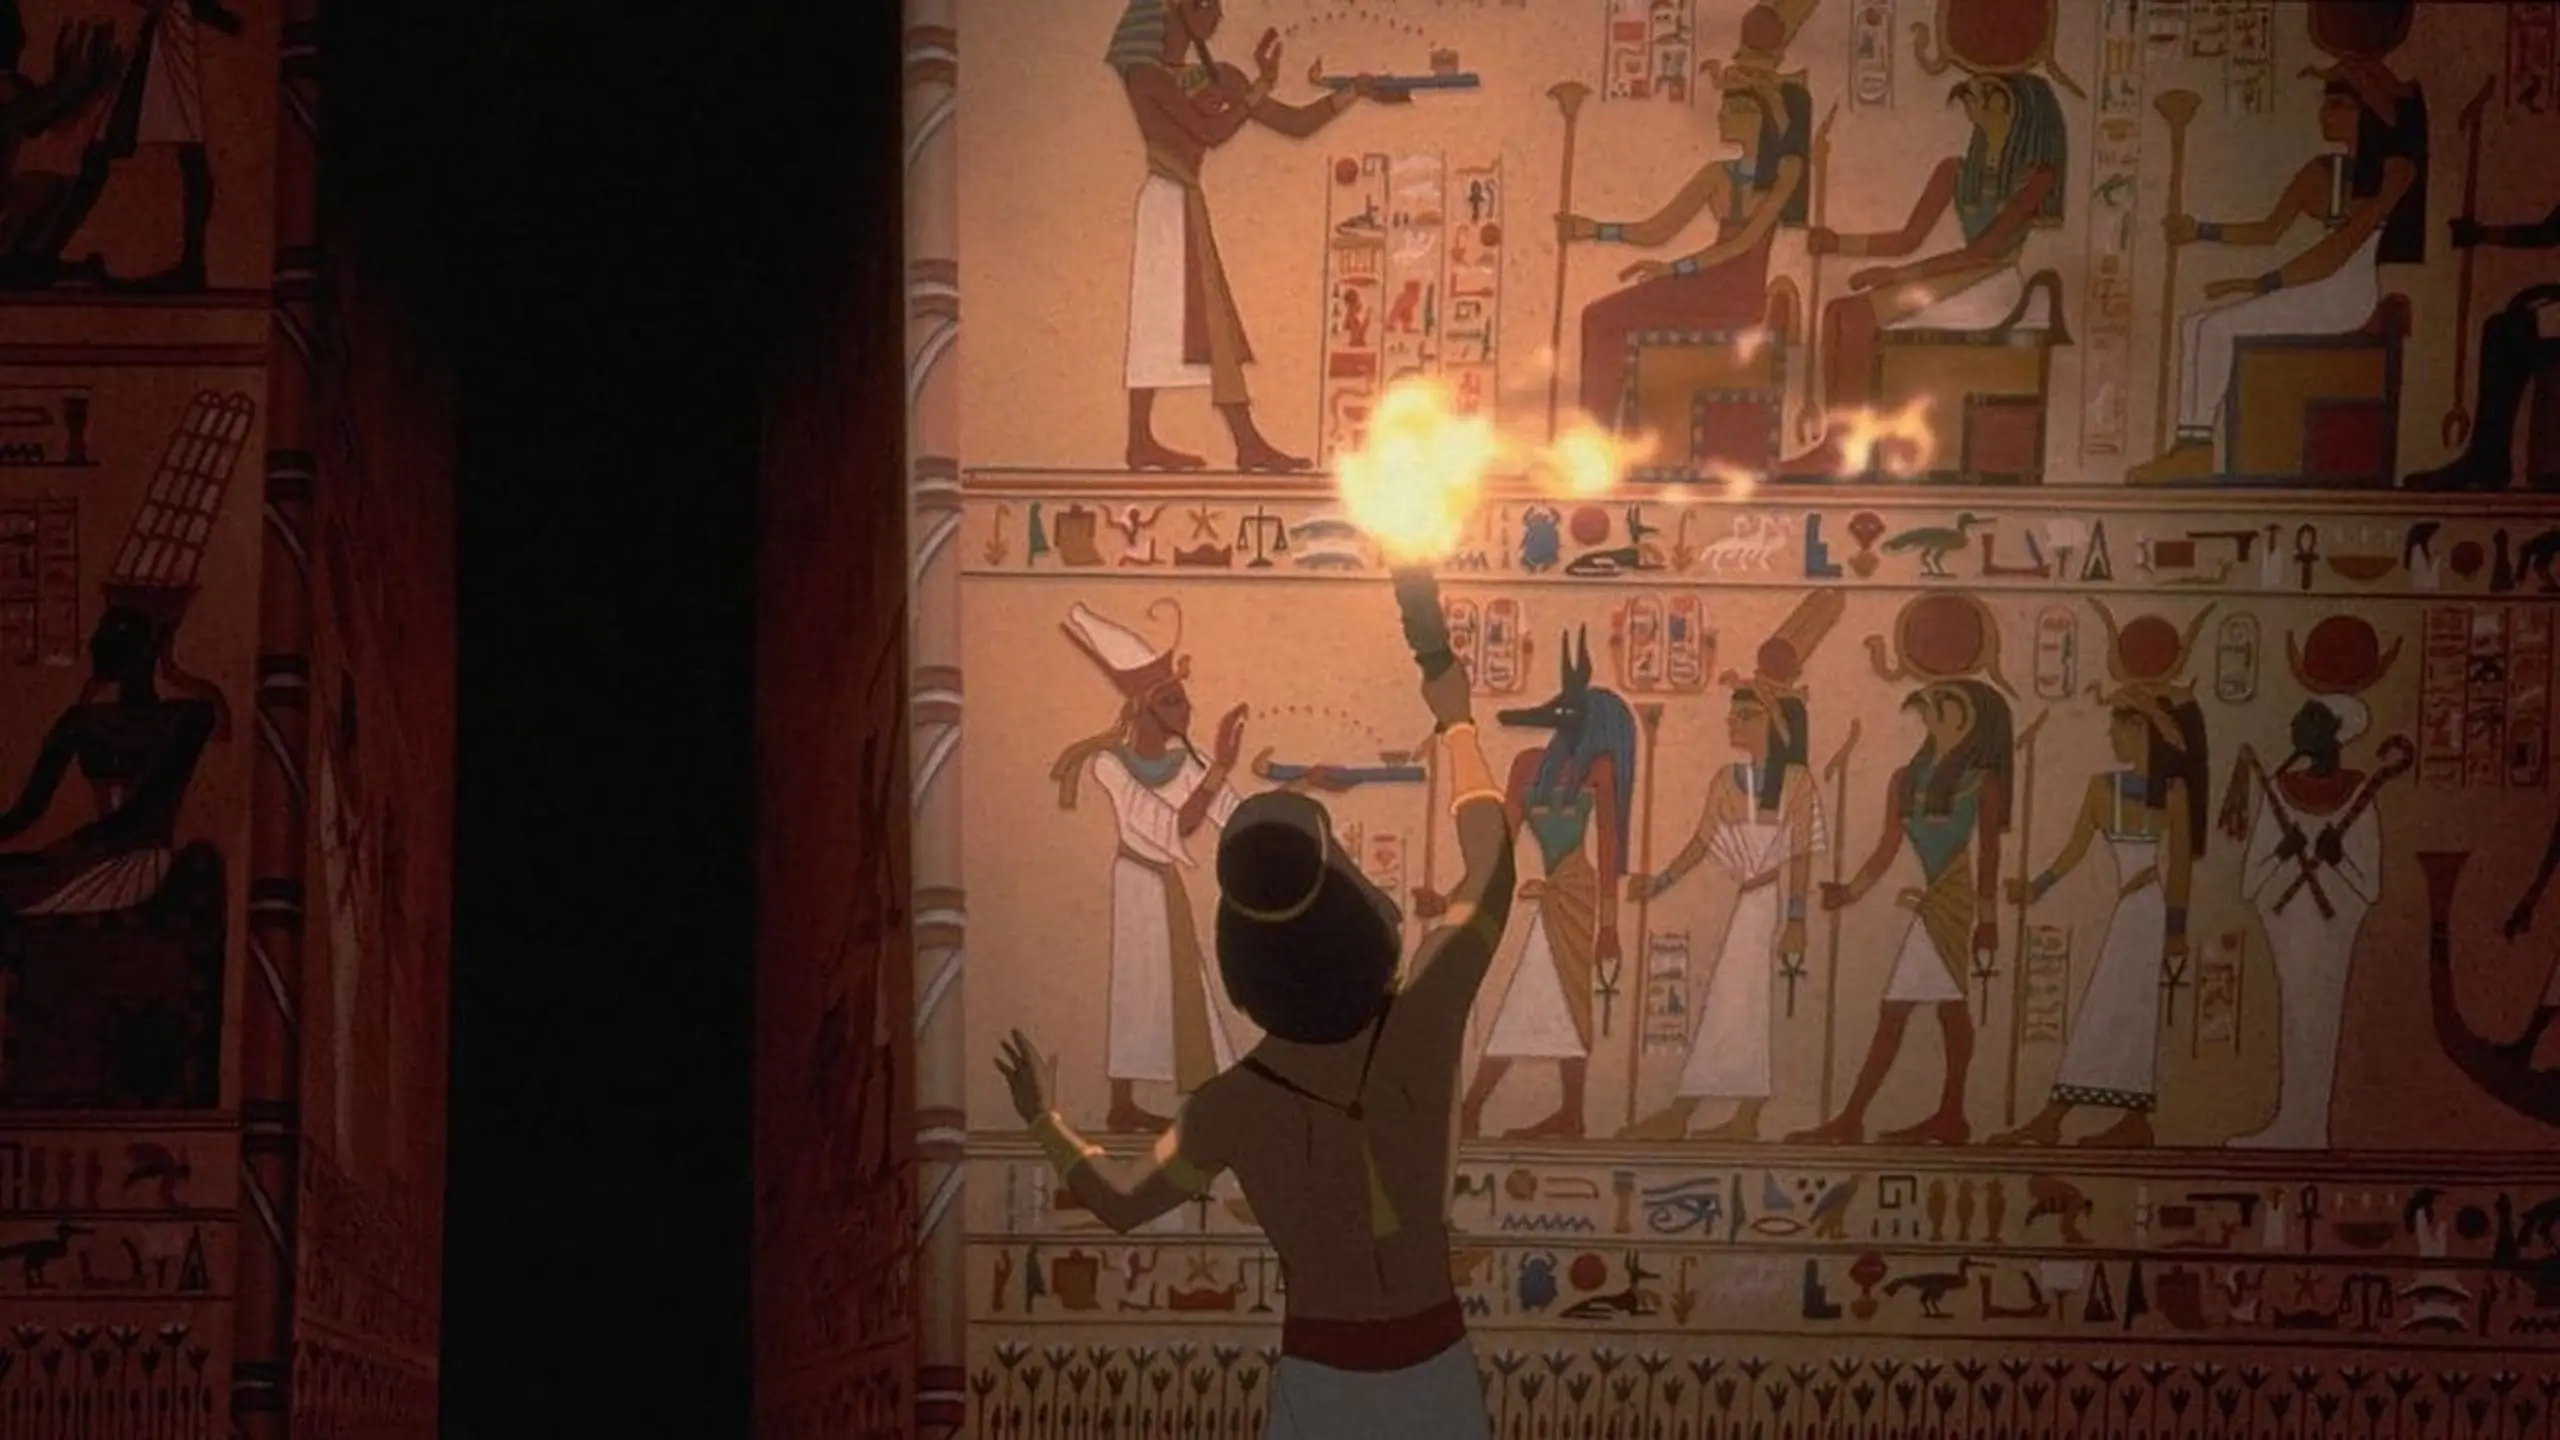 Der Prinz von Ägypten